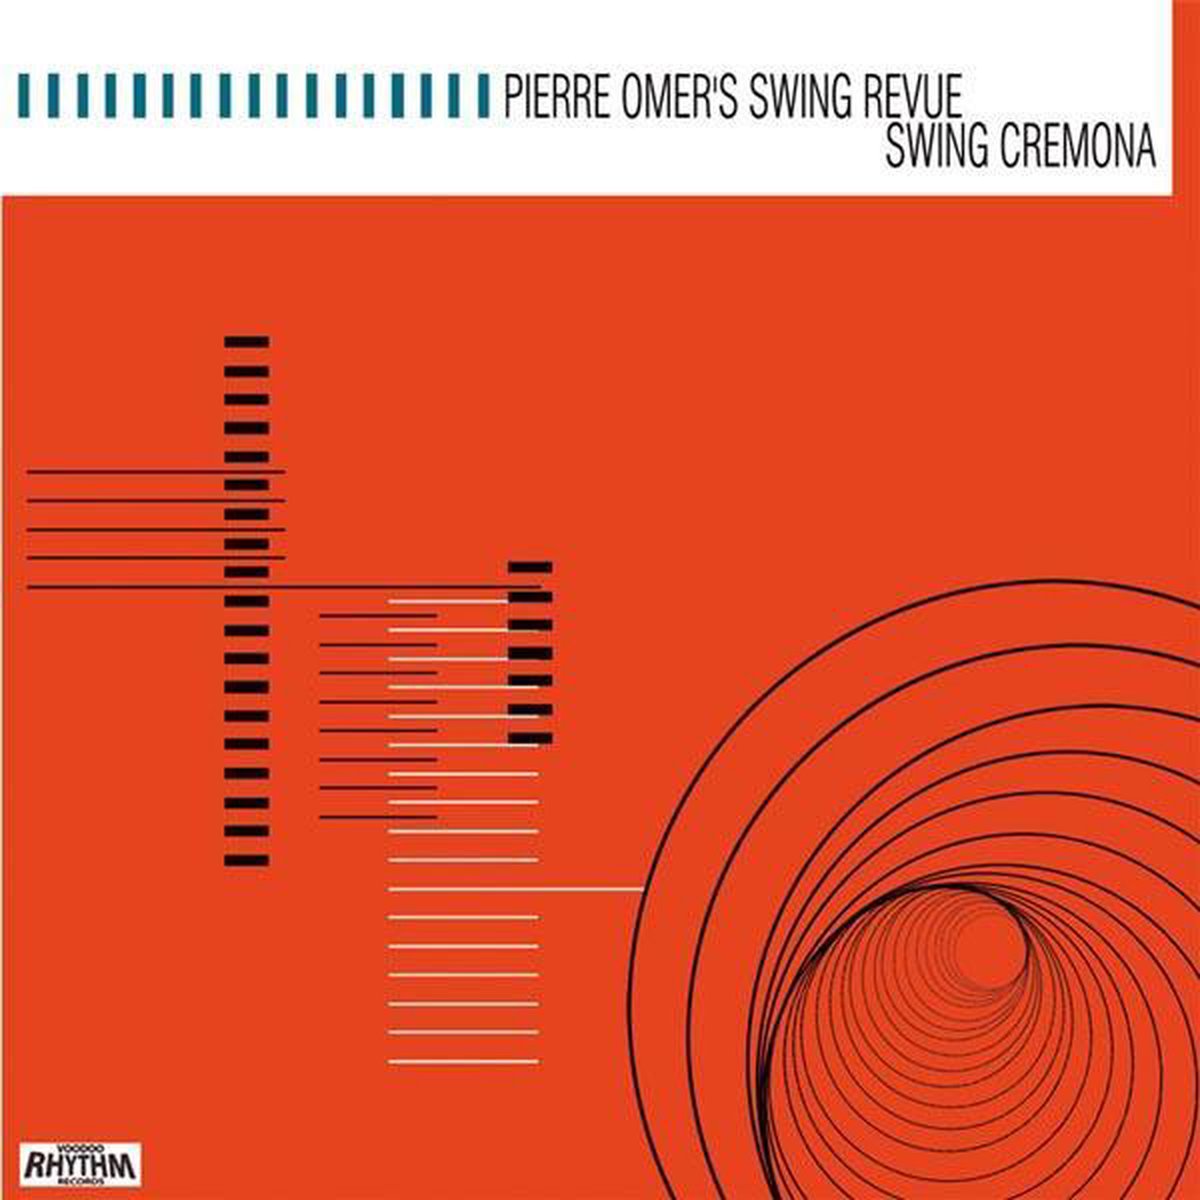 Swing Cremona - Pierre -'S Swing Revue- Omer